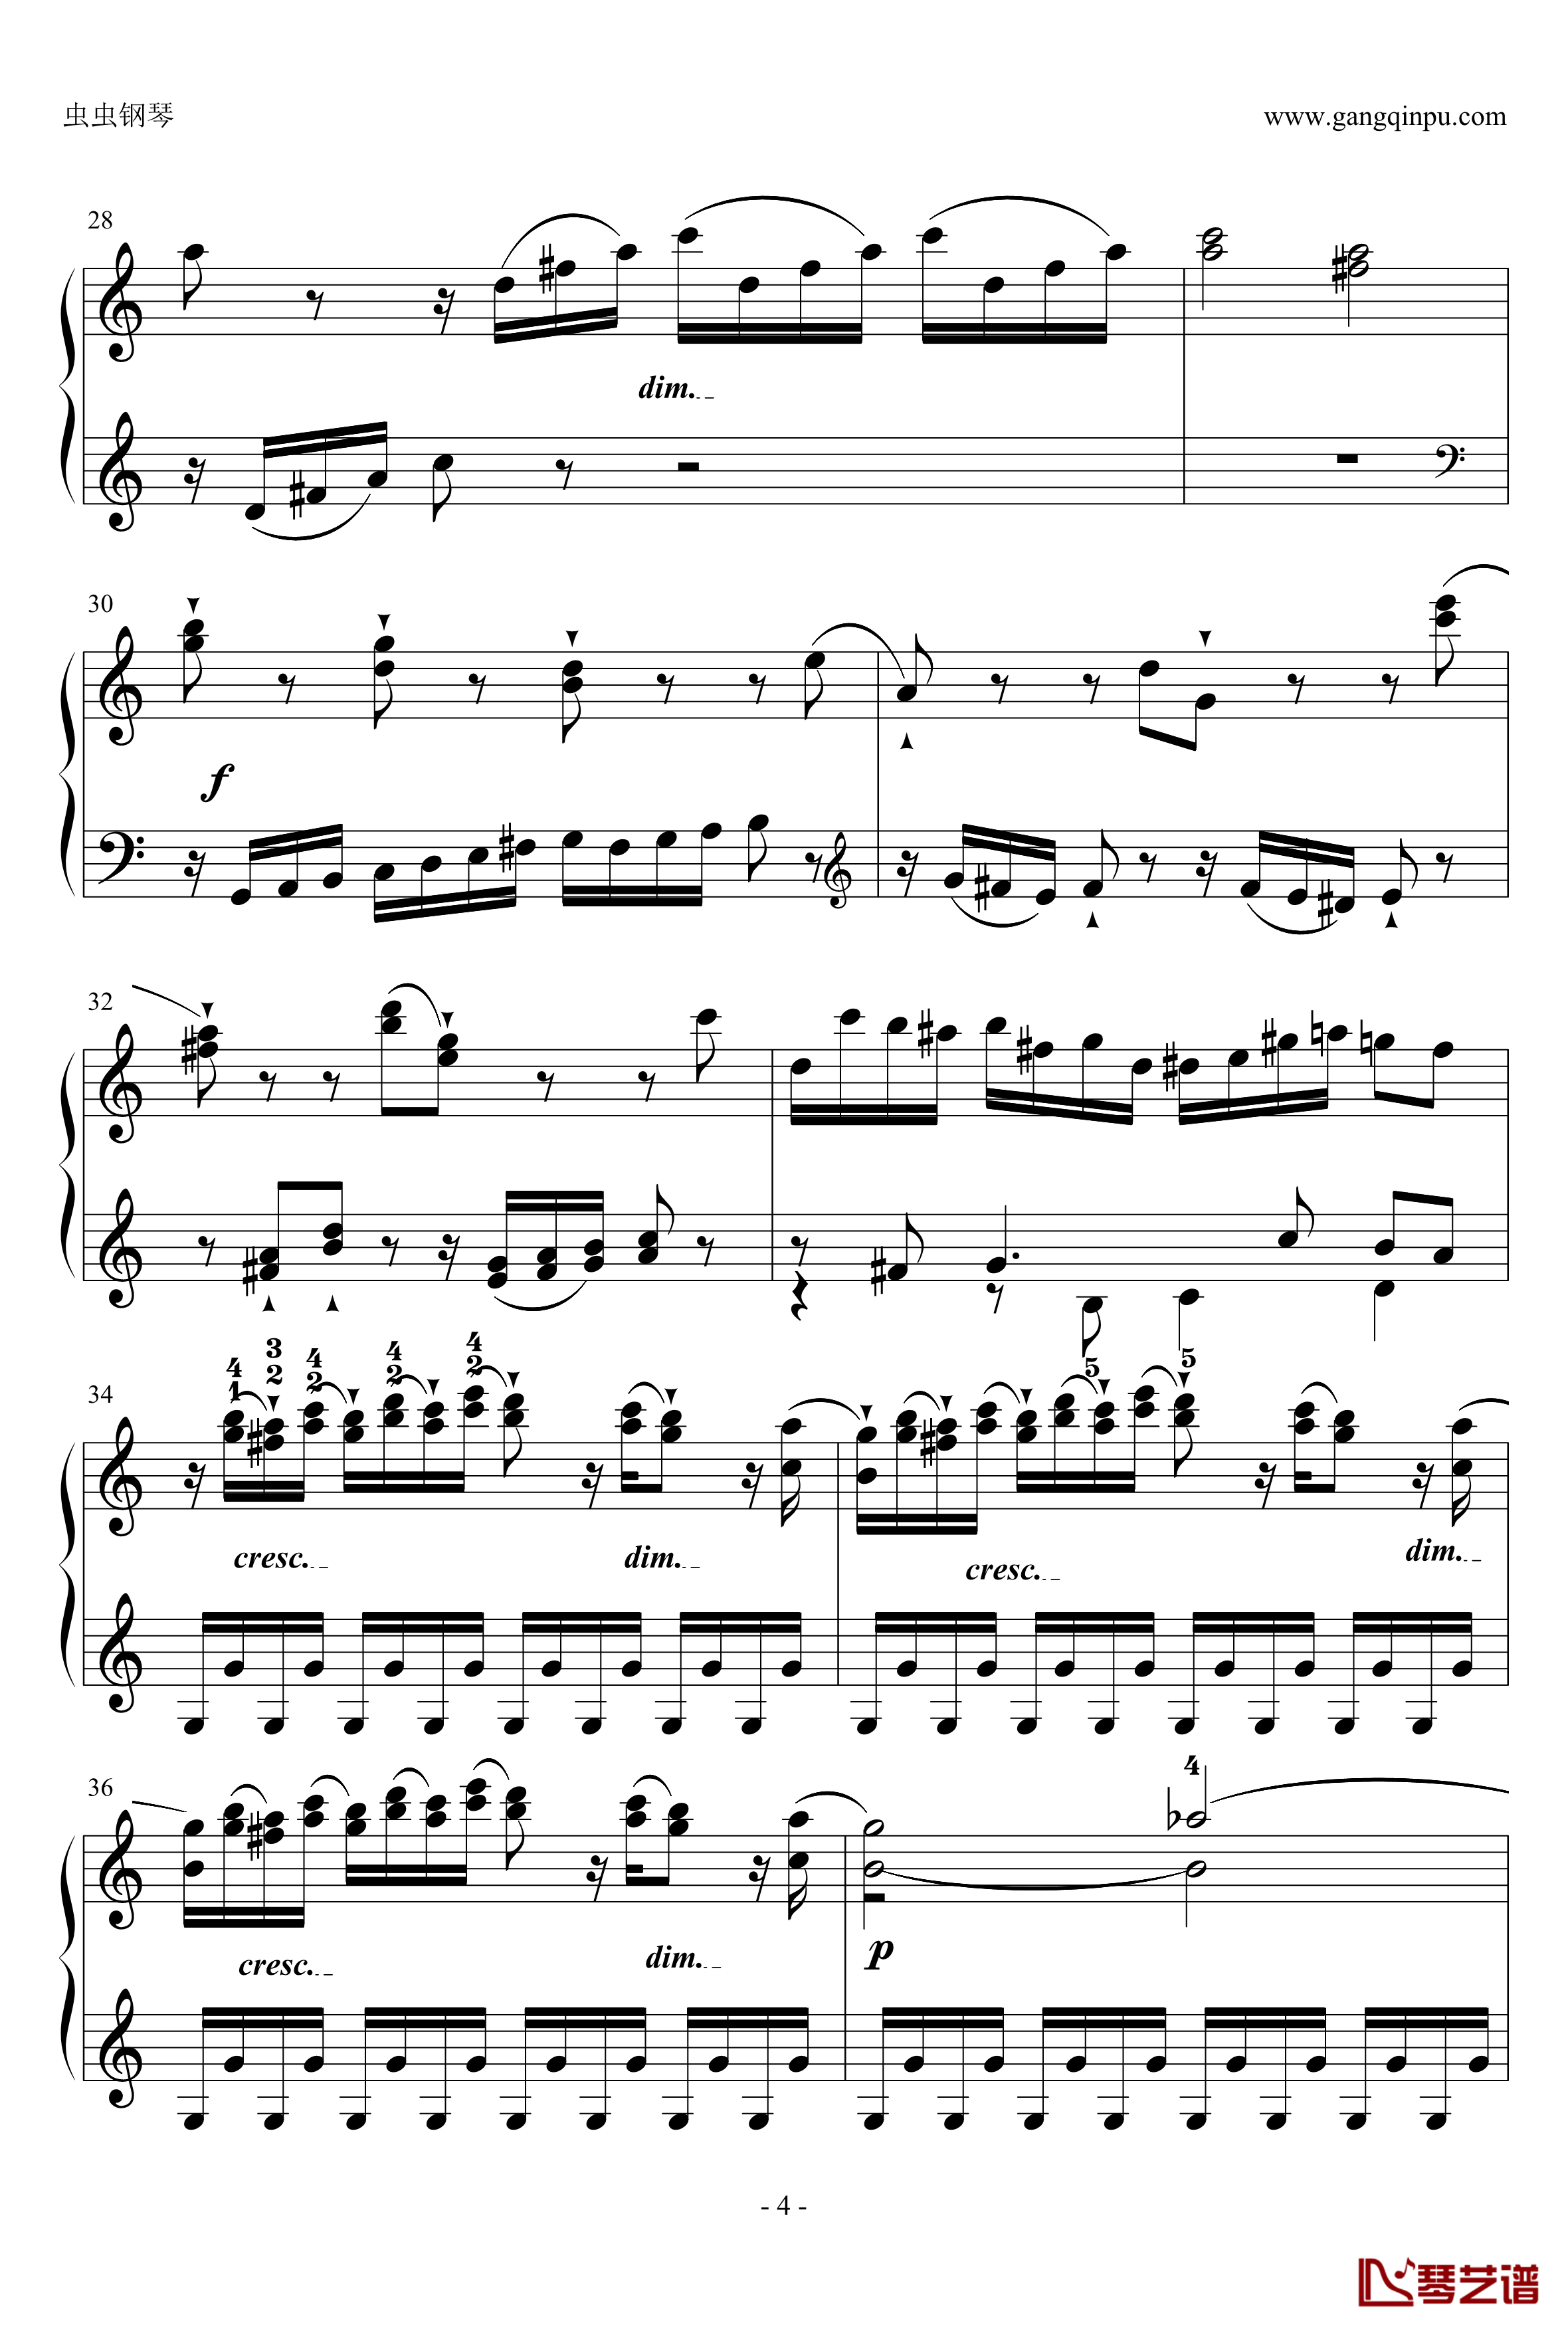 C大调奏鸣曲钢琴谱第一乐章-海顿4